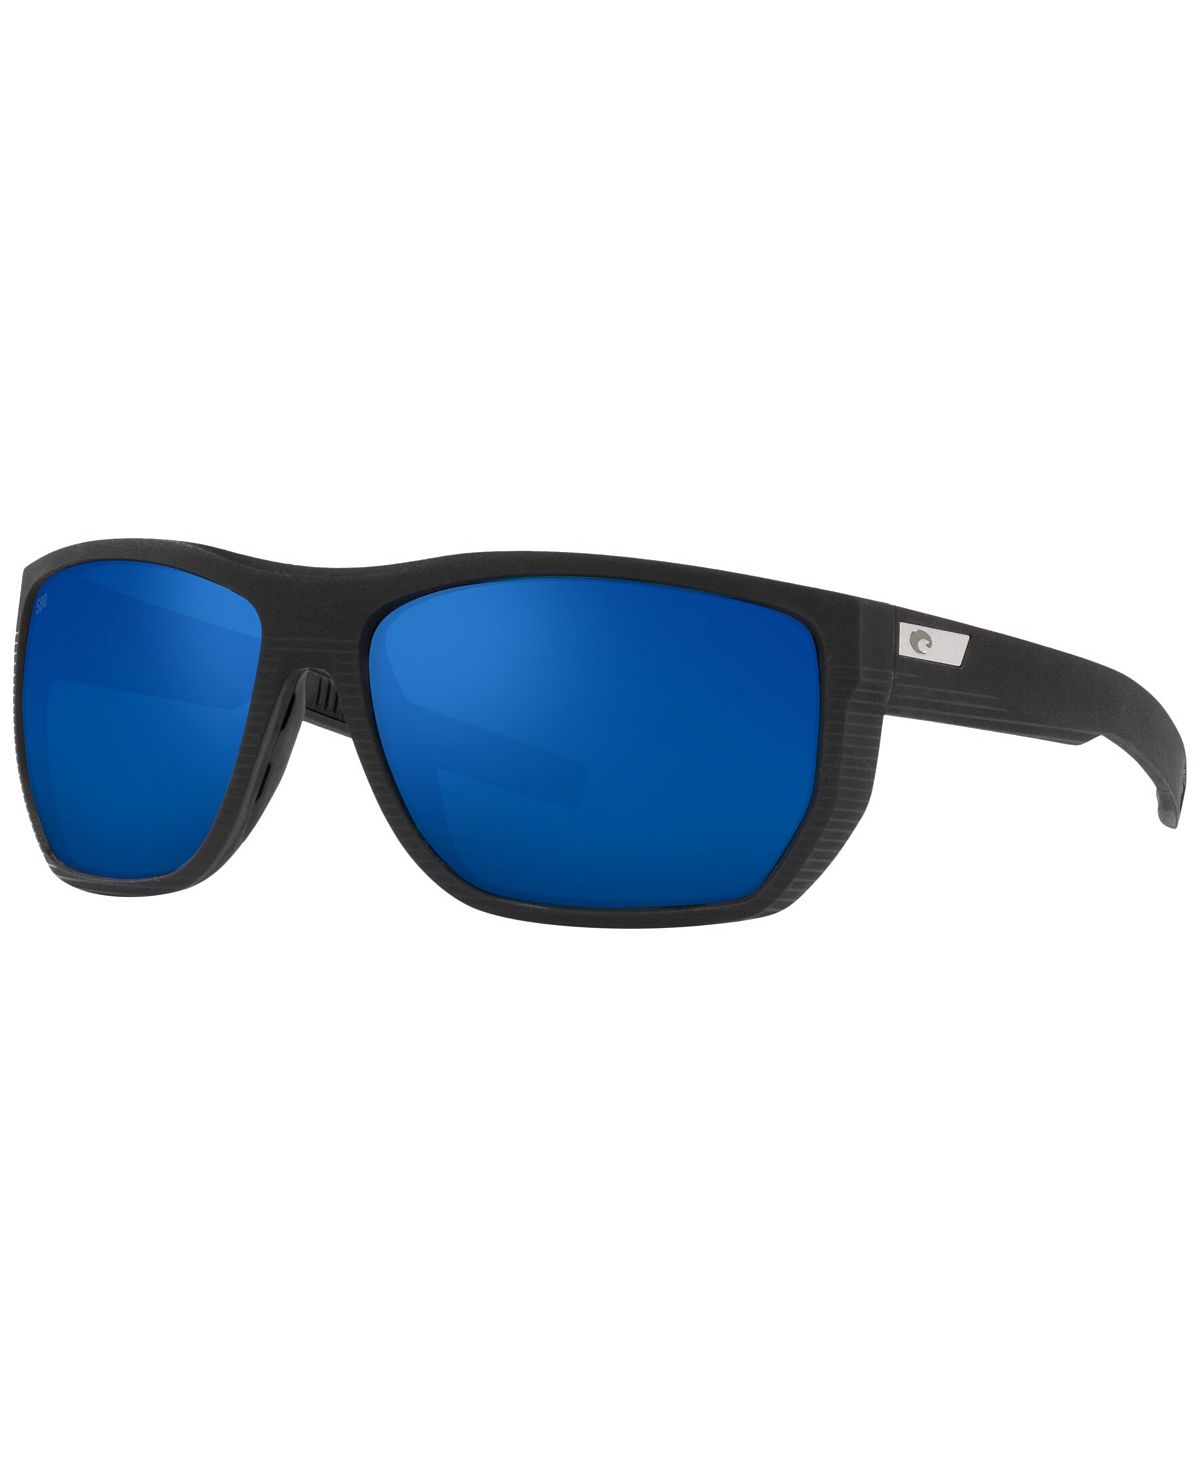 Мужские поляризованные солнцезащитные очки, 06S9085 Santiago 63 Costa Del Mar